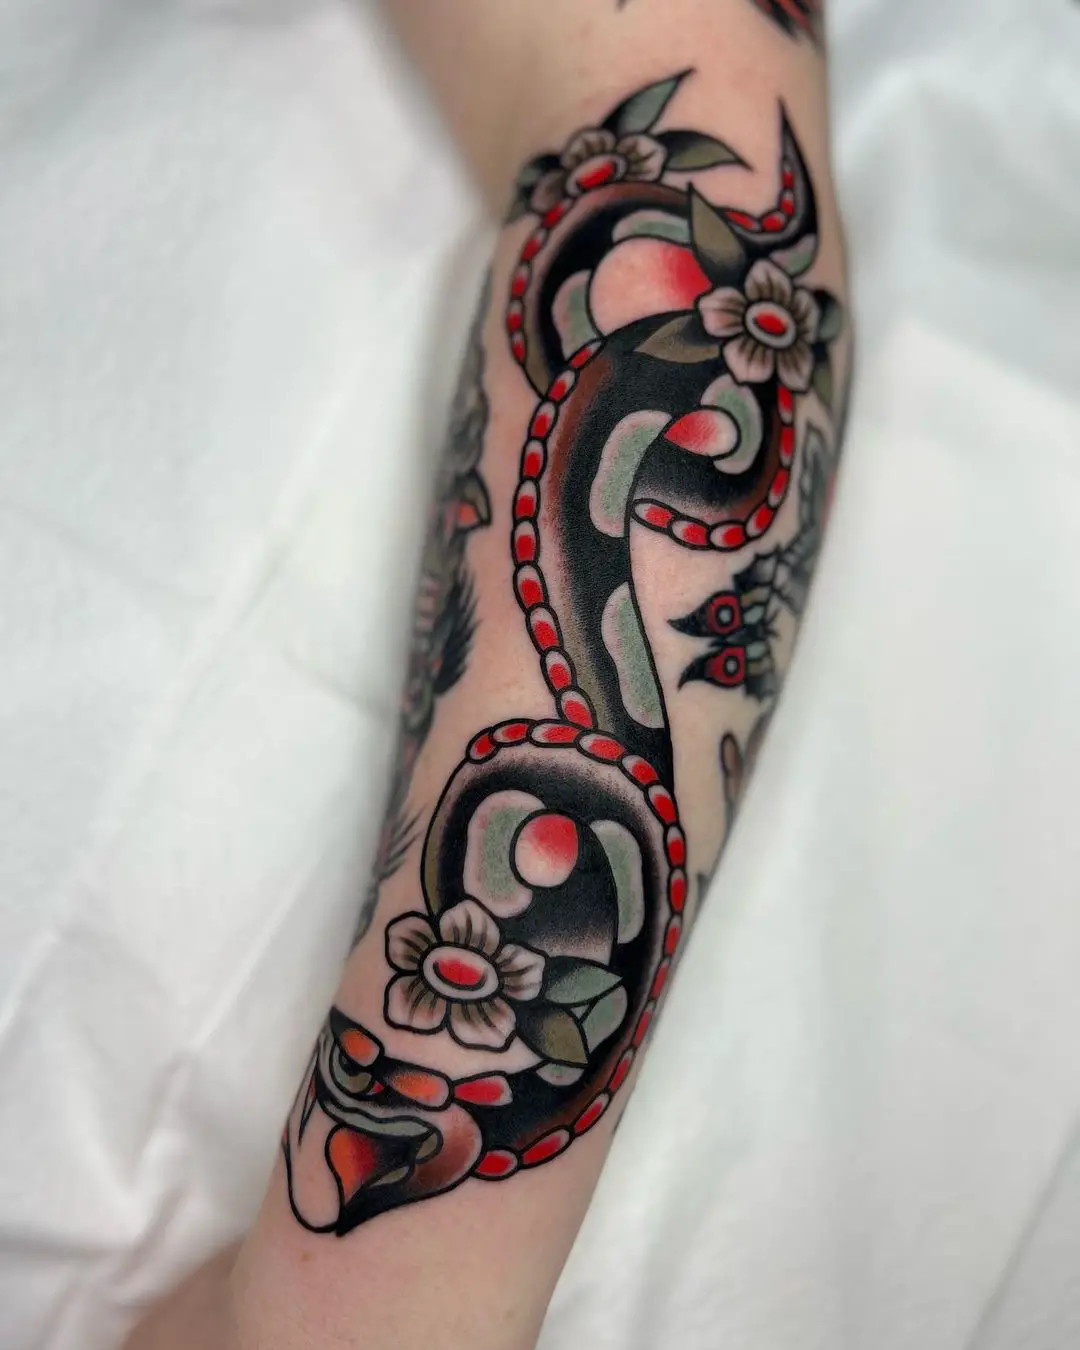 Traditiona snake tattooo by loganisaacson